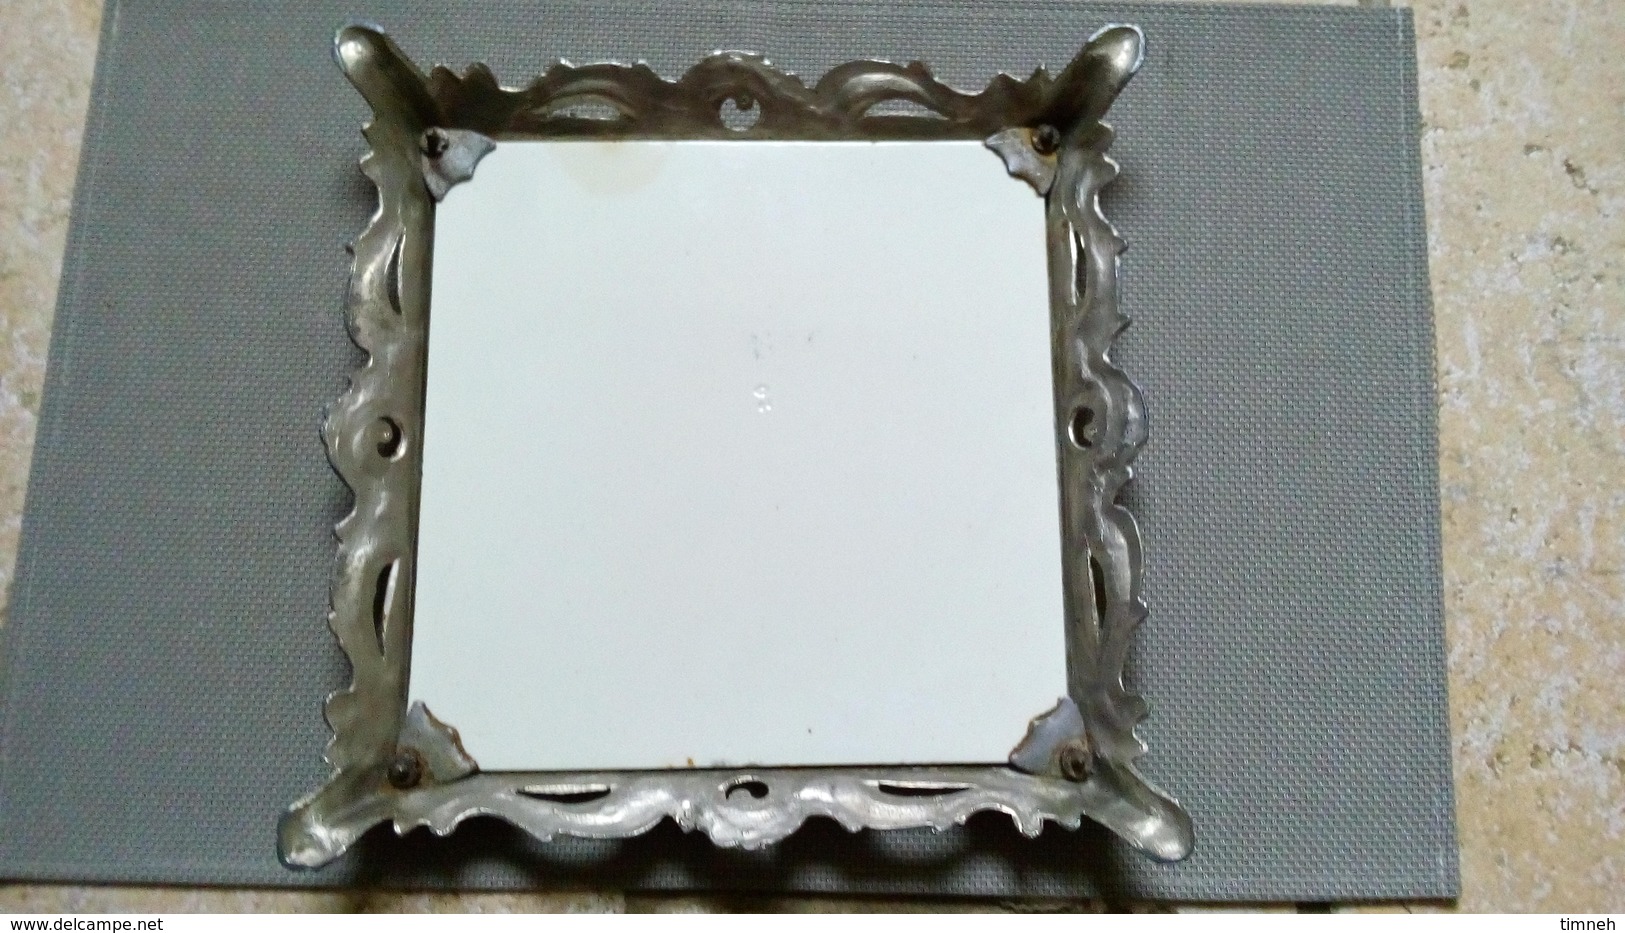 LES CHARDONS ROSES - DESSOUS DE PLAT EN FAÏENCE 25X4cm - socle métal régule style Louis XV - céramique n°20